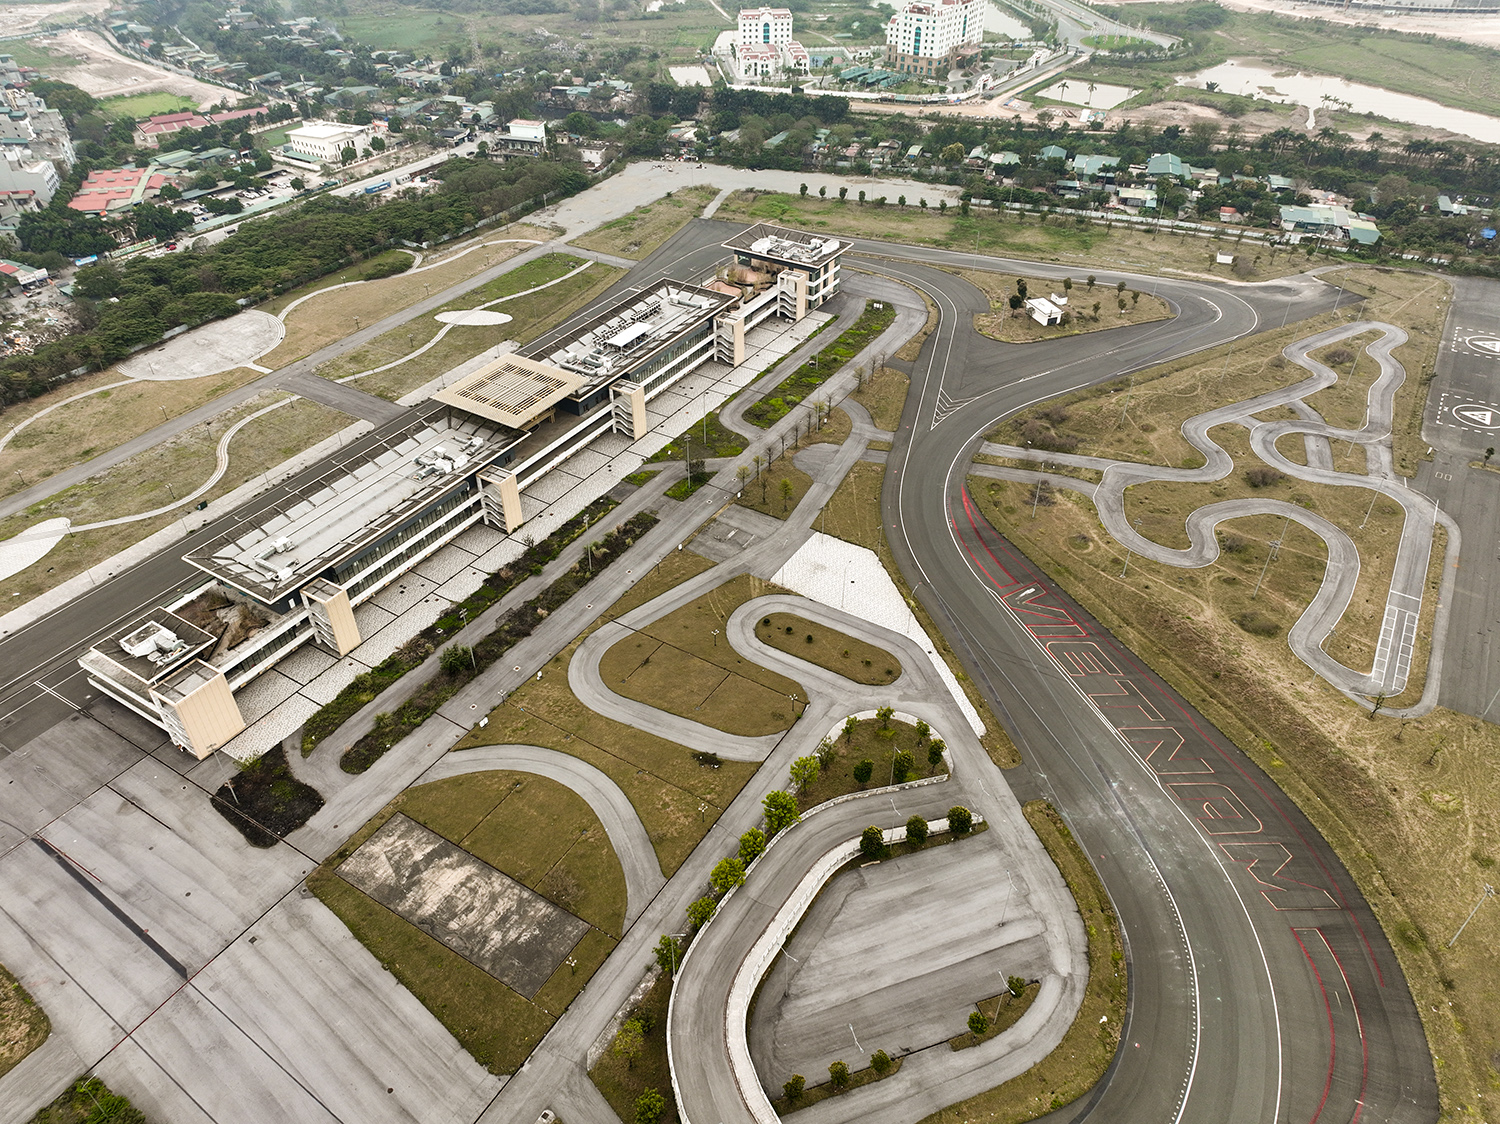 Đường đua F1 nằm trong Khu Liên hợp Thể thao Quốc gia Mỹ Đình, được xây dựng vào tháng 3/2019.&nbsp;